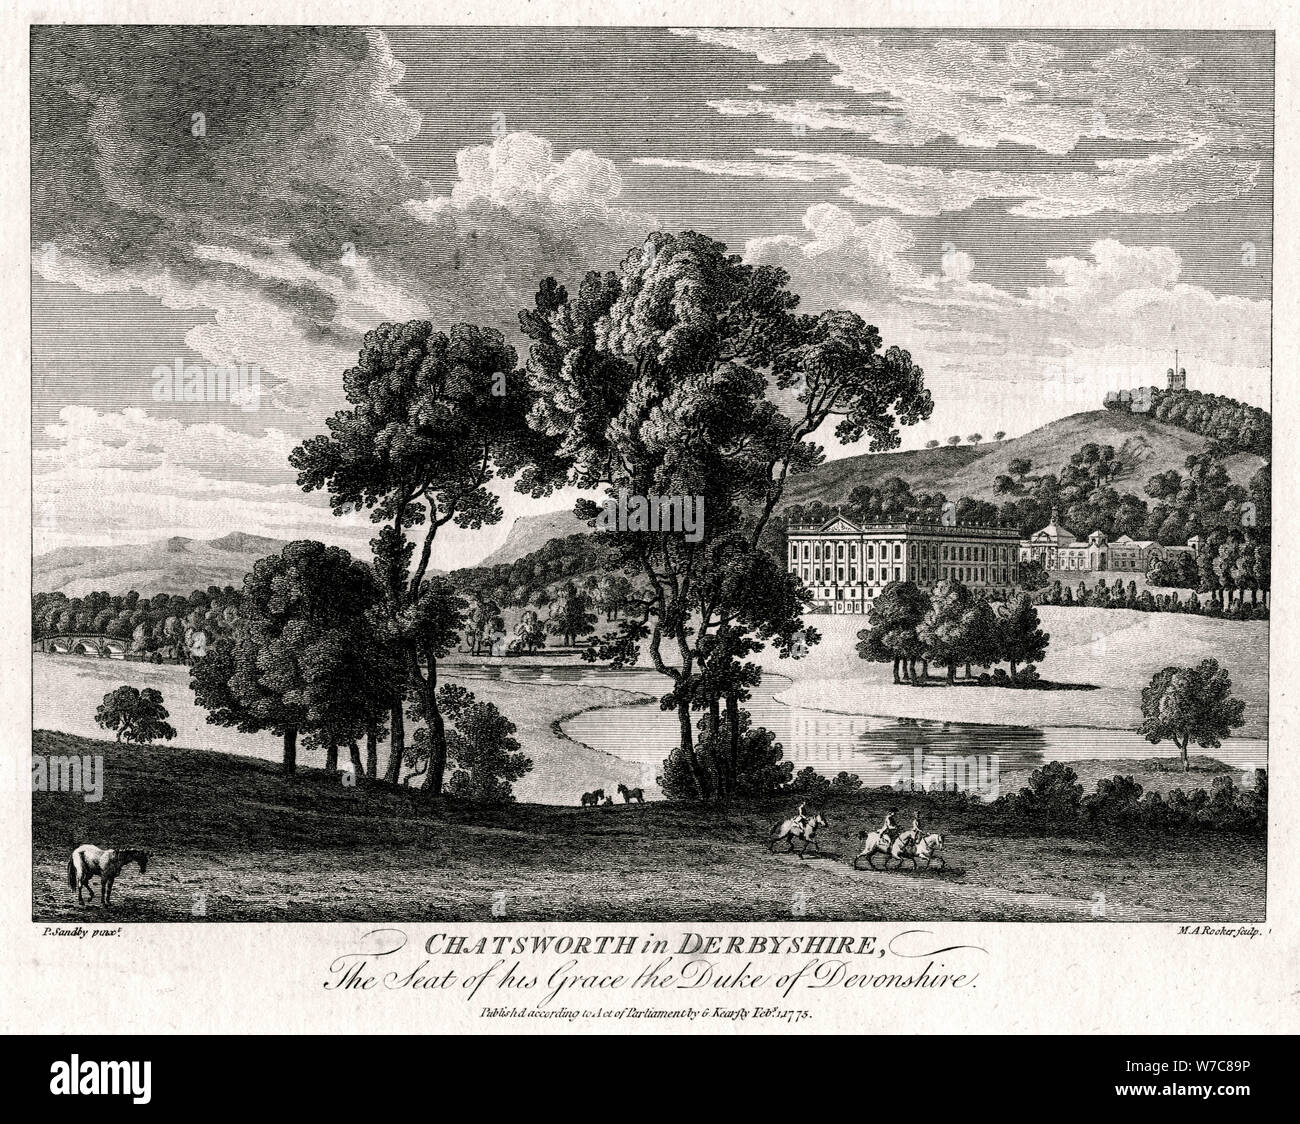 "Chatsworth nel Derbyshire, la sede della Sua Grazia il Duca di Devonshire', 1775. Artista: Michael Rooker Angelo Foto Stock